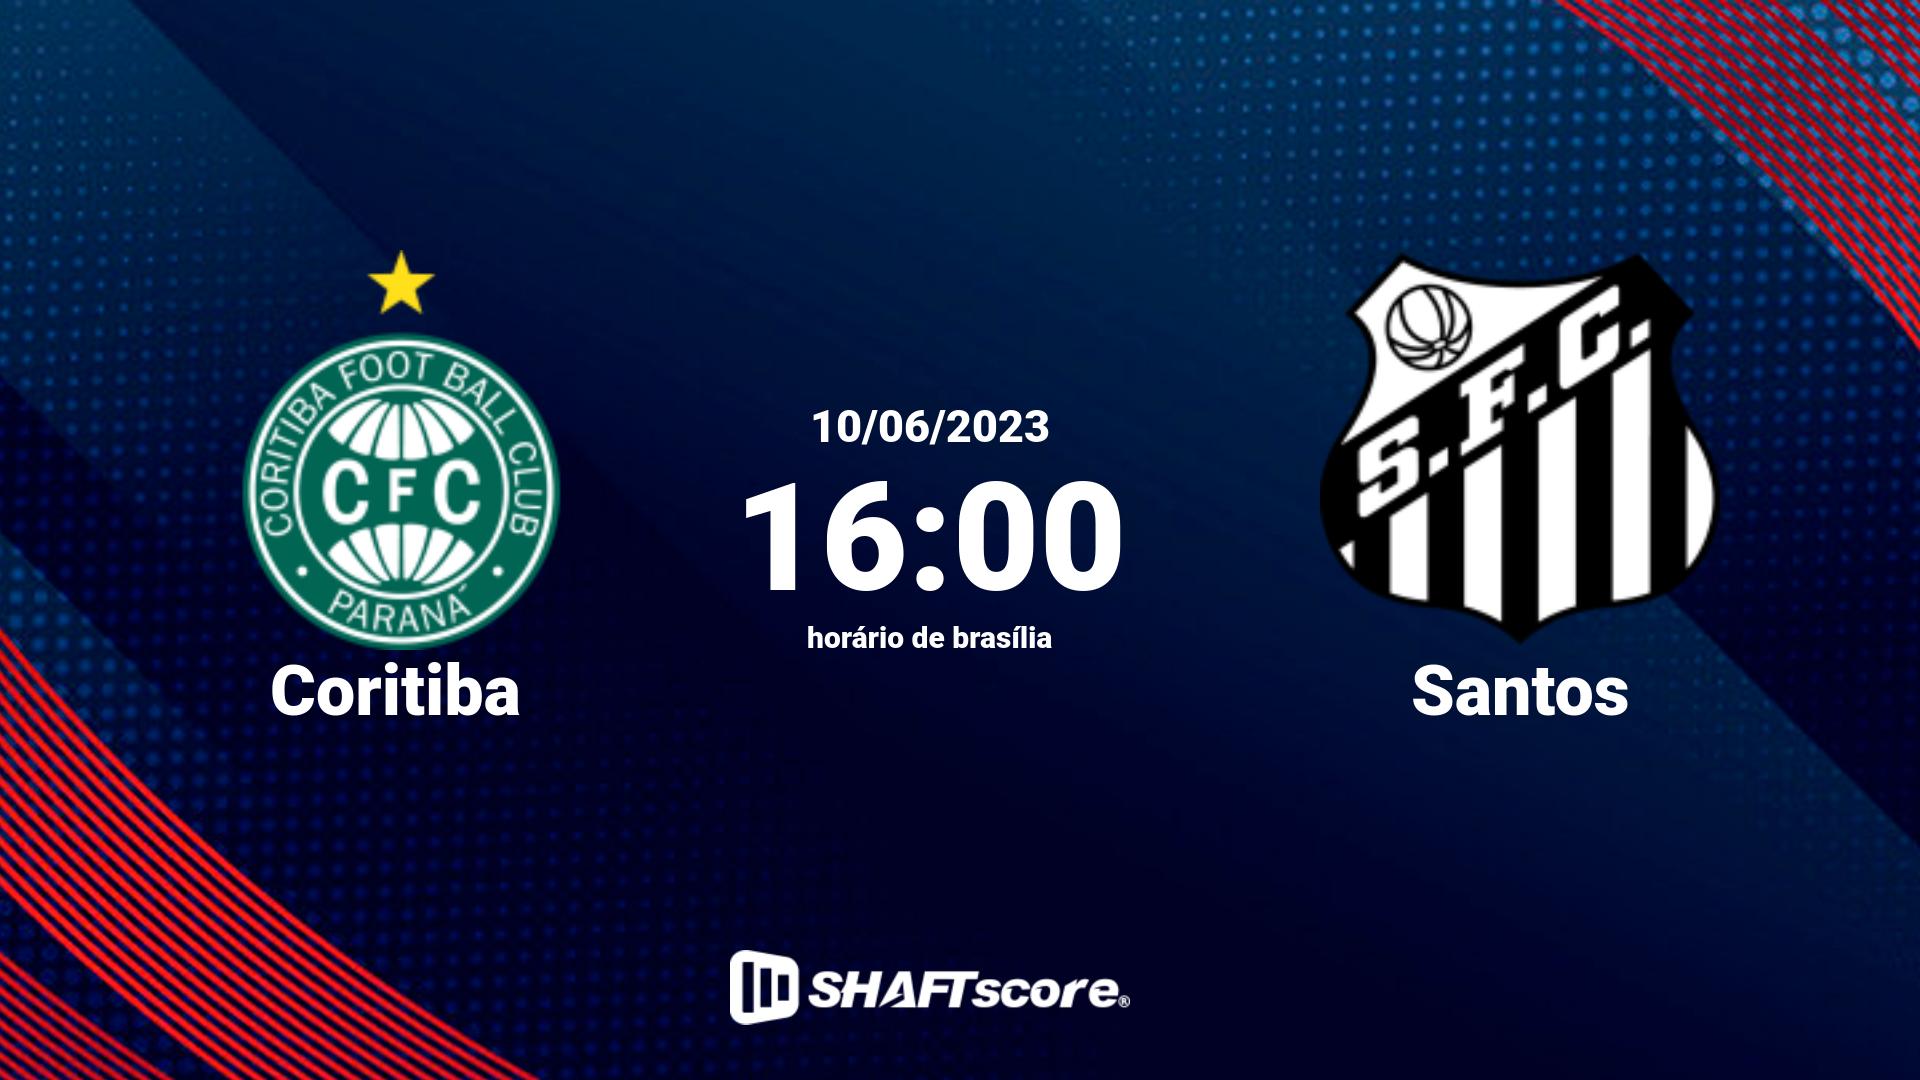 Estatísticas do jogo Coritiba vs Santos 10.06 16:00